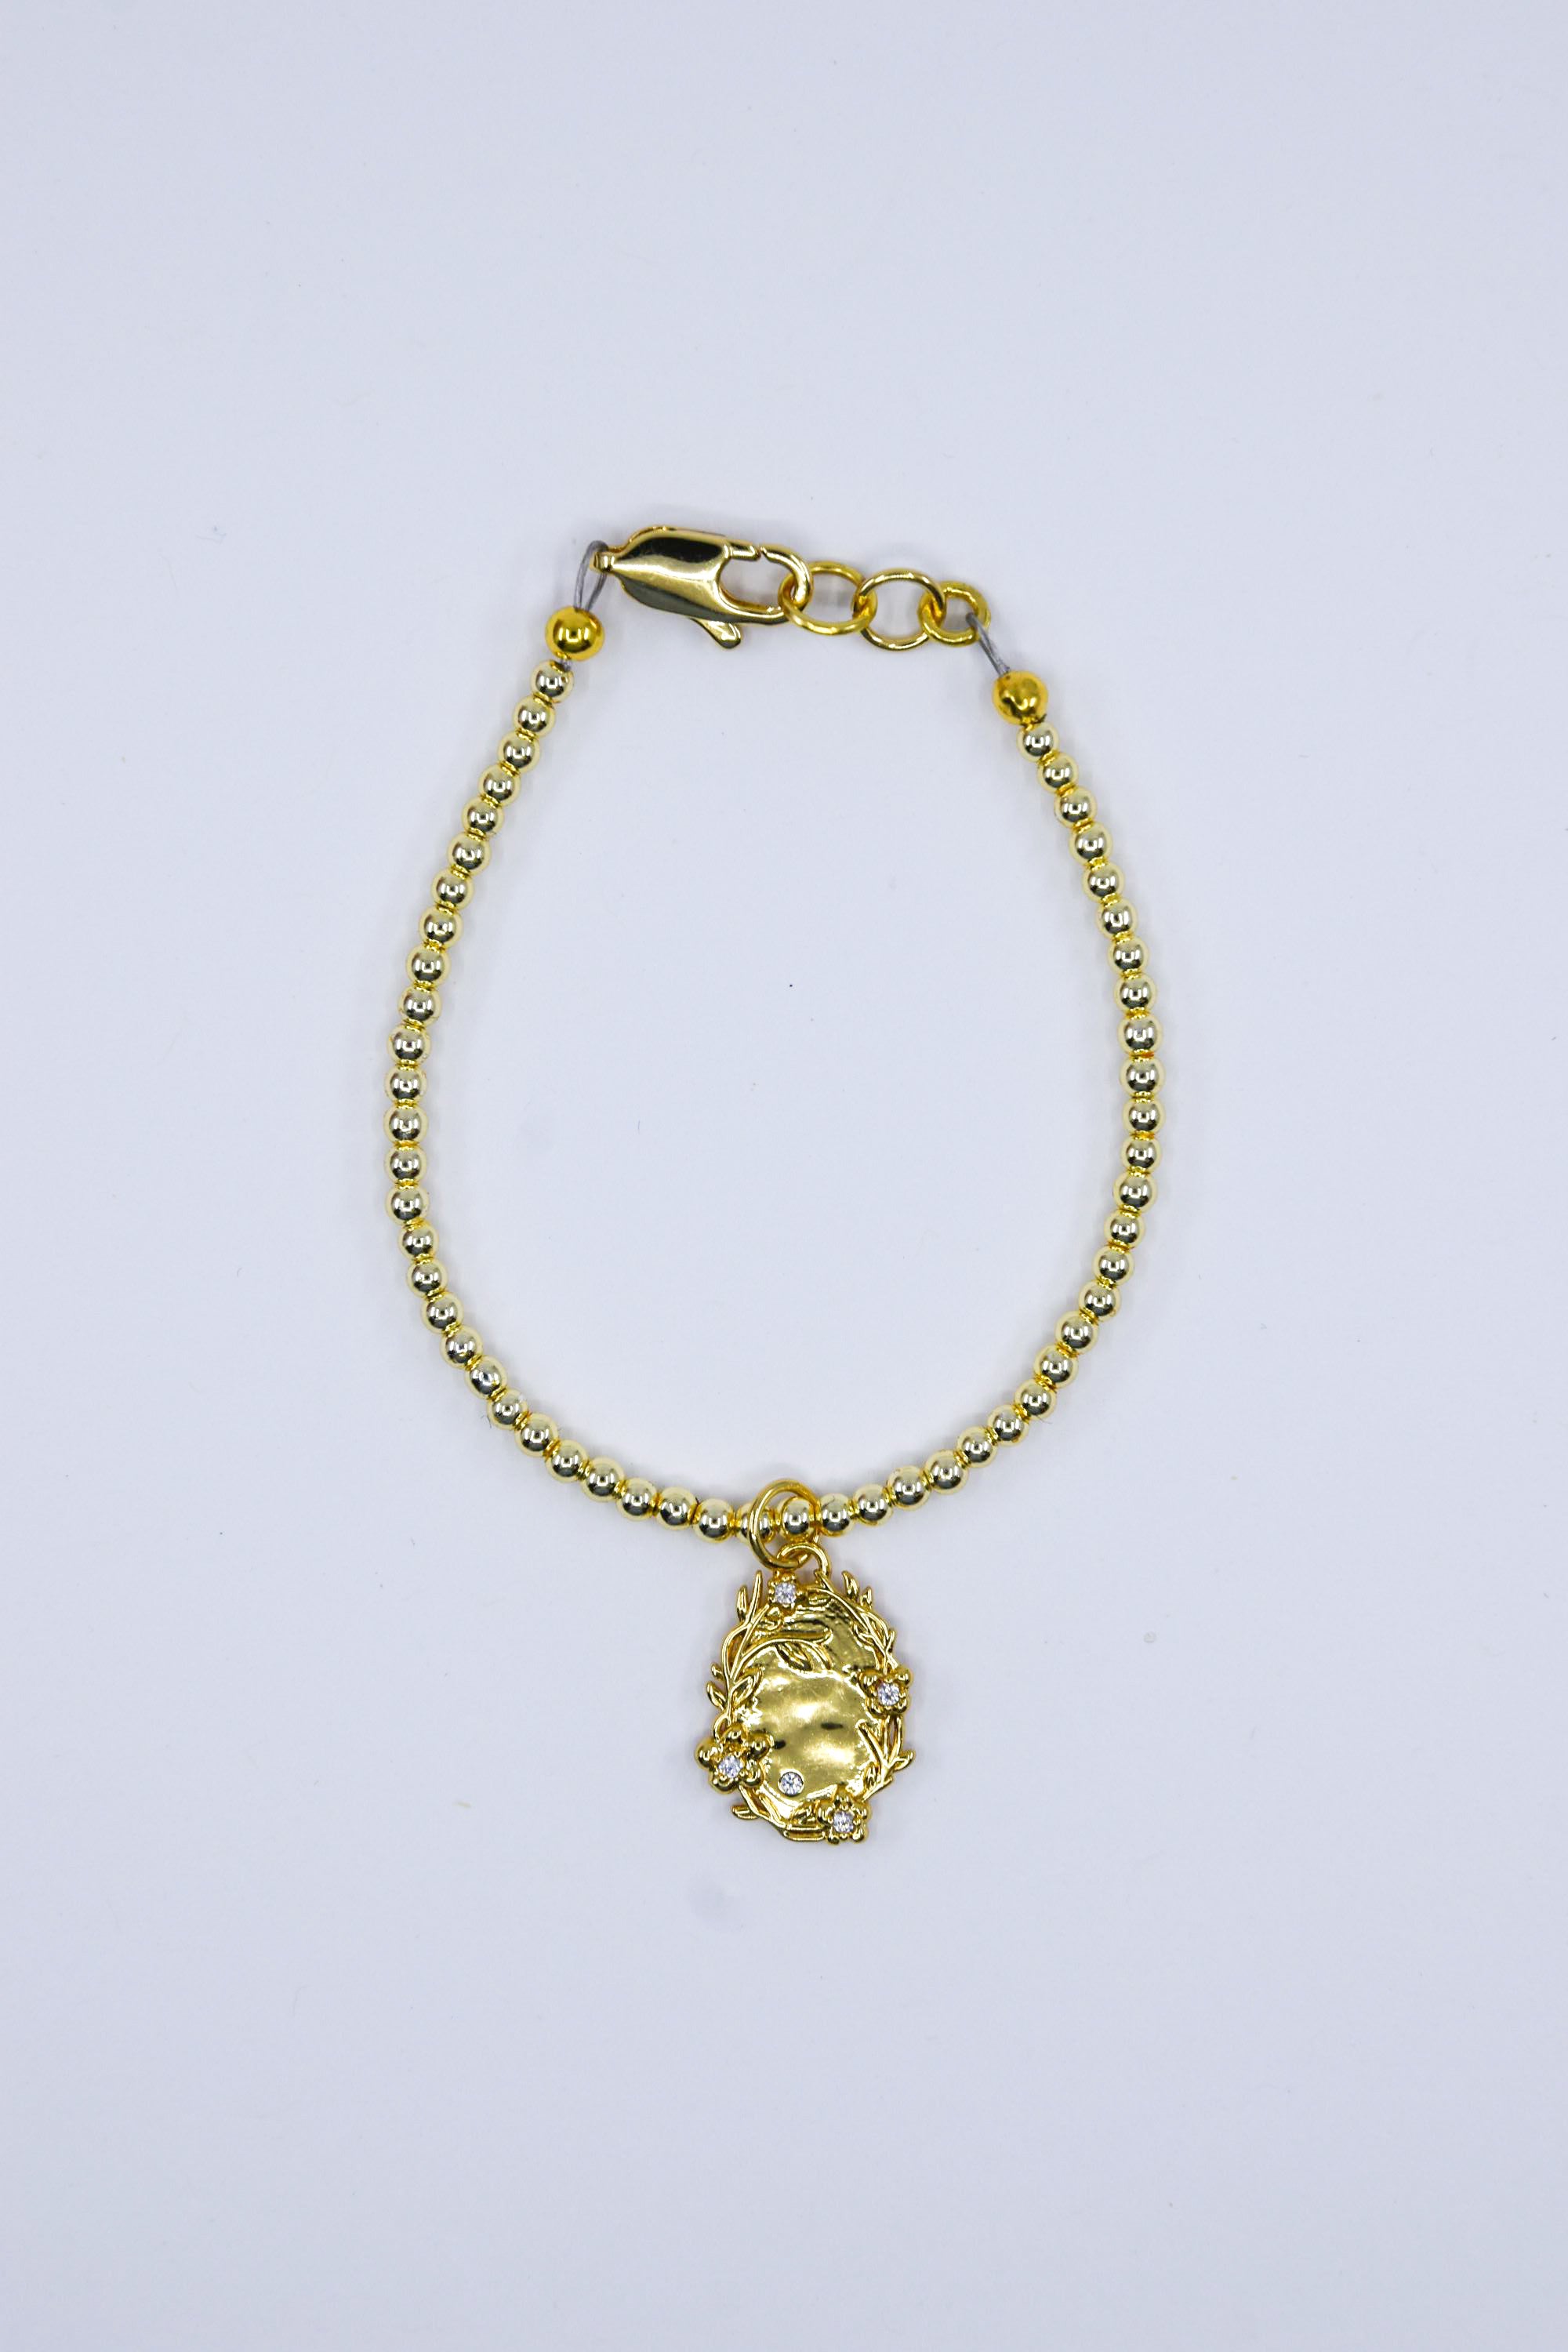 Whimsical Gold Filled Floral Charm Bracelet